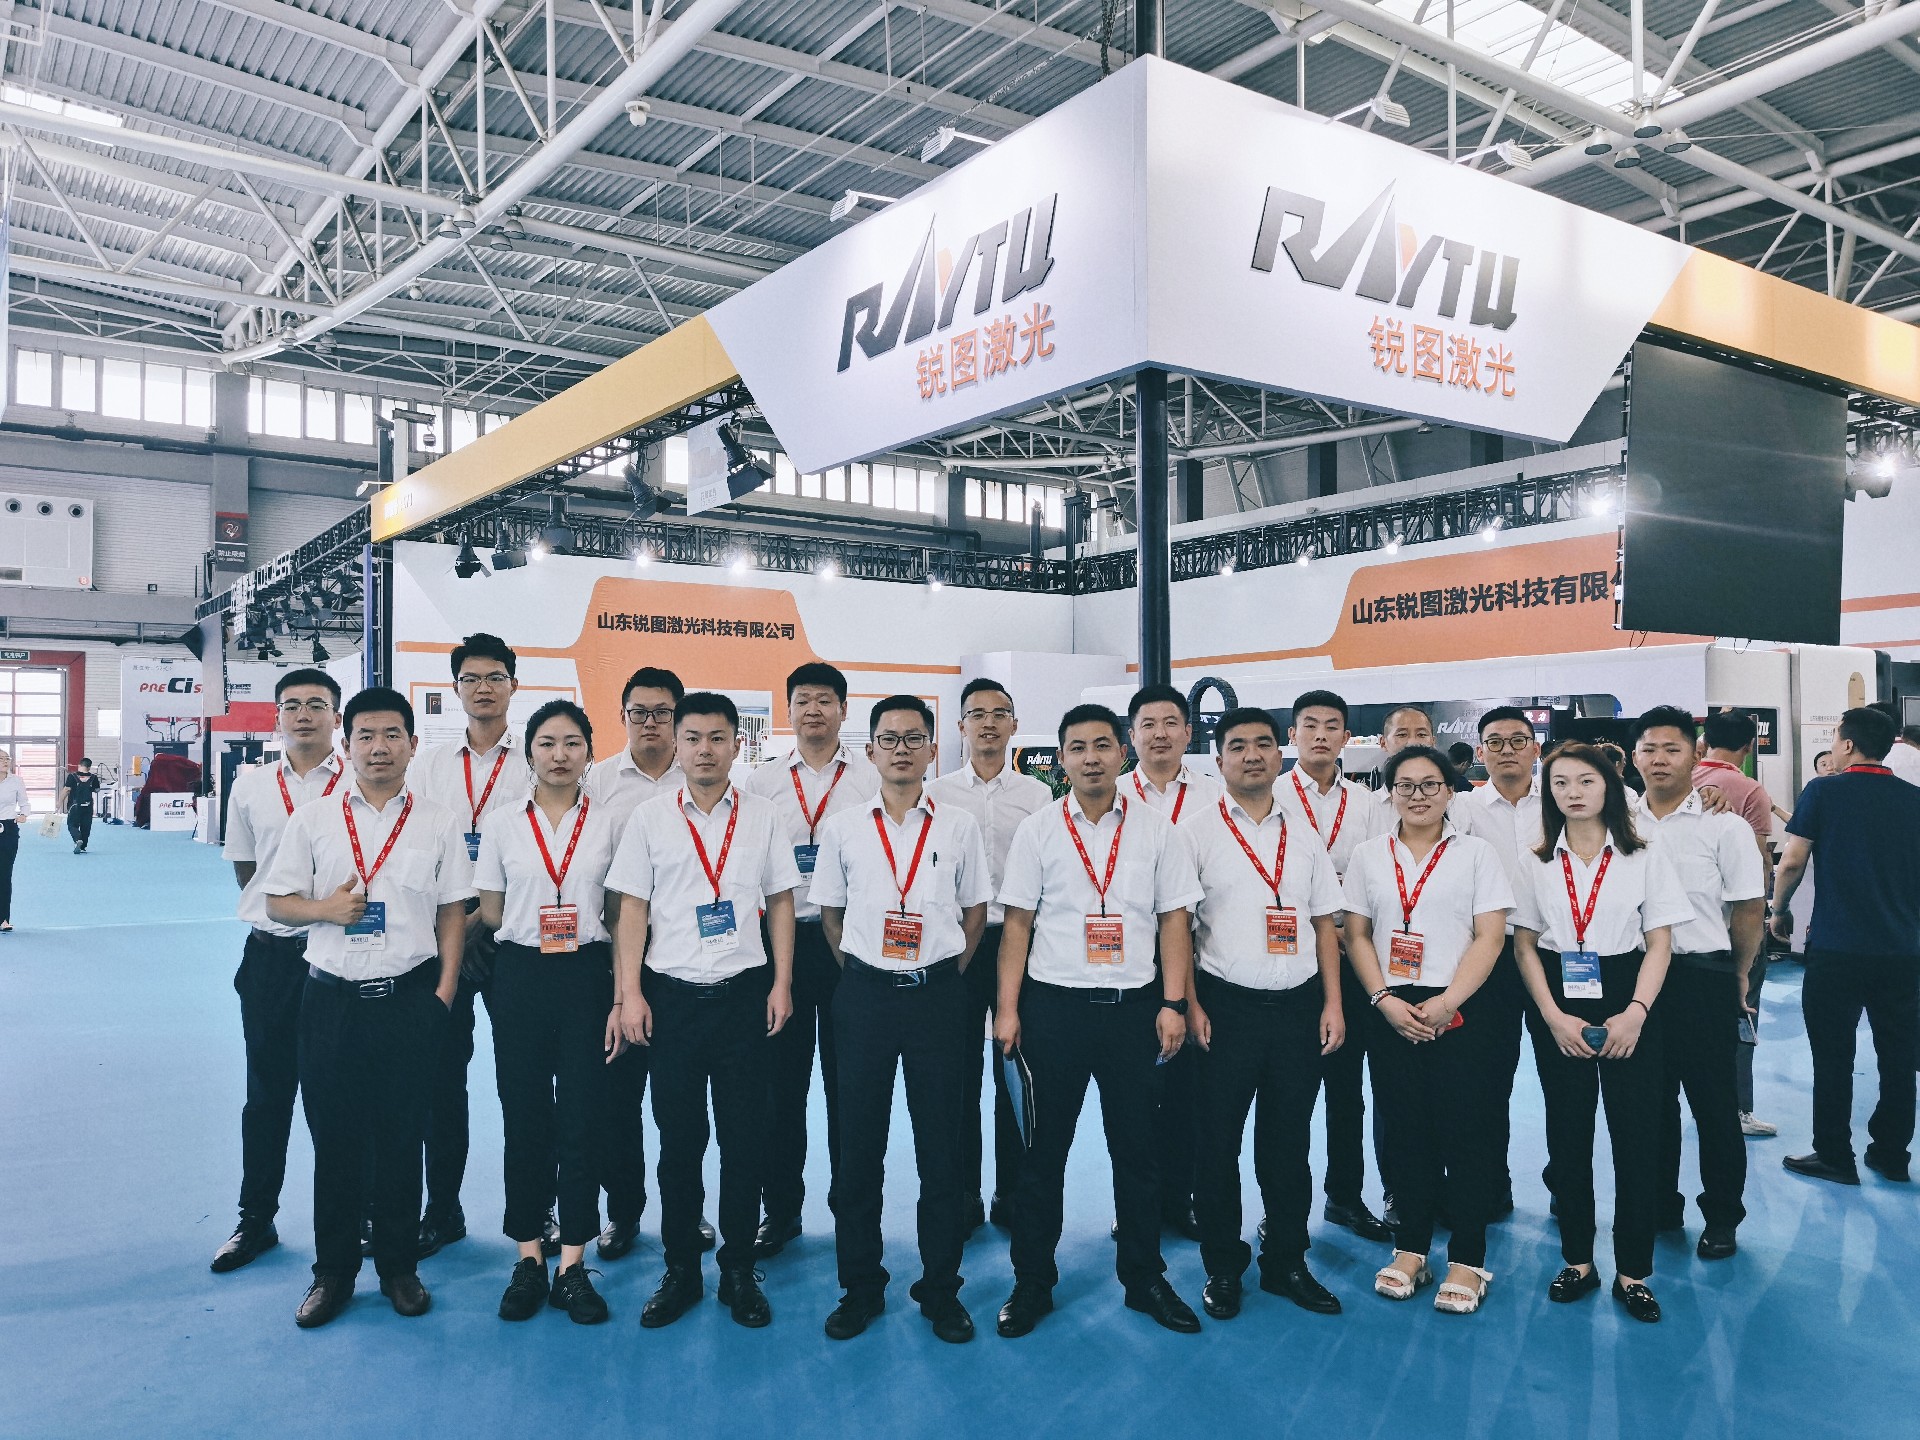 تمت دعوة  Raytu Laser  للمشاركة في معرض تشينغداو الدولي الرابع والعشرين لأدوات الآلات